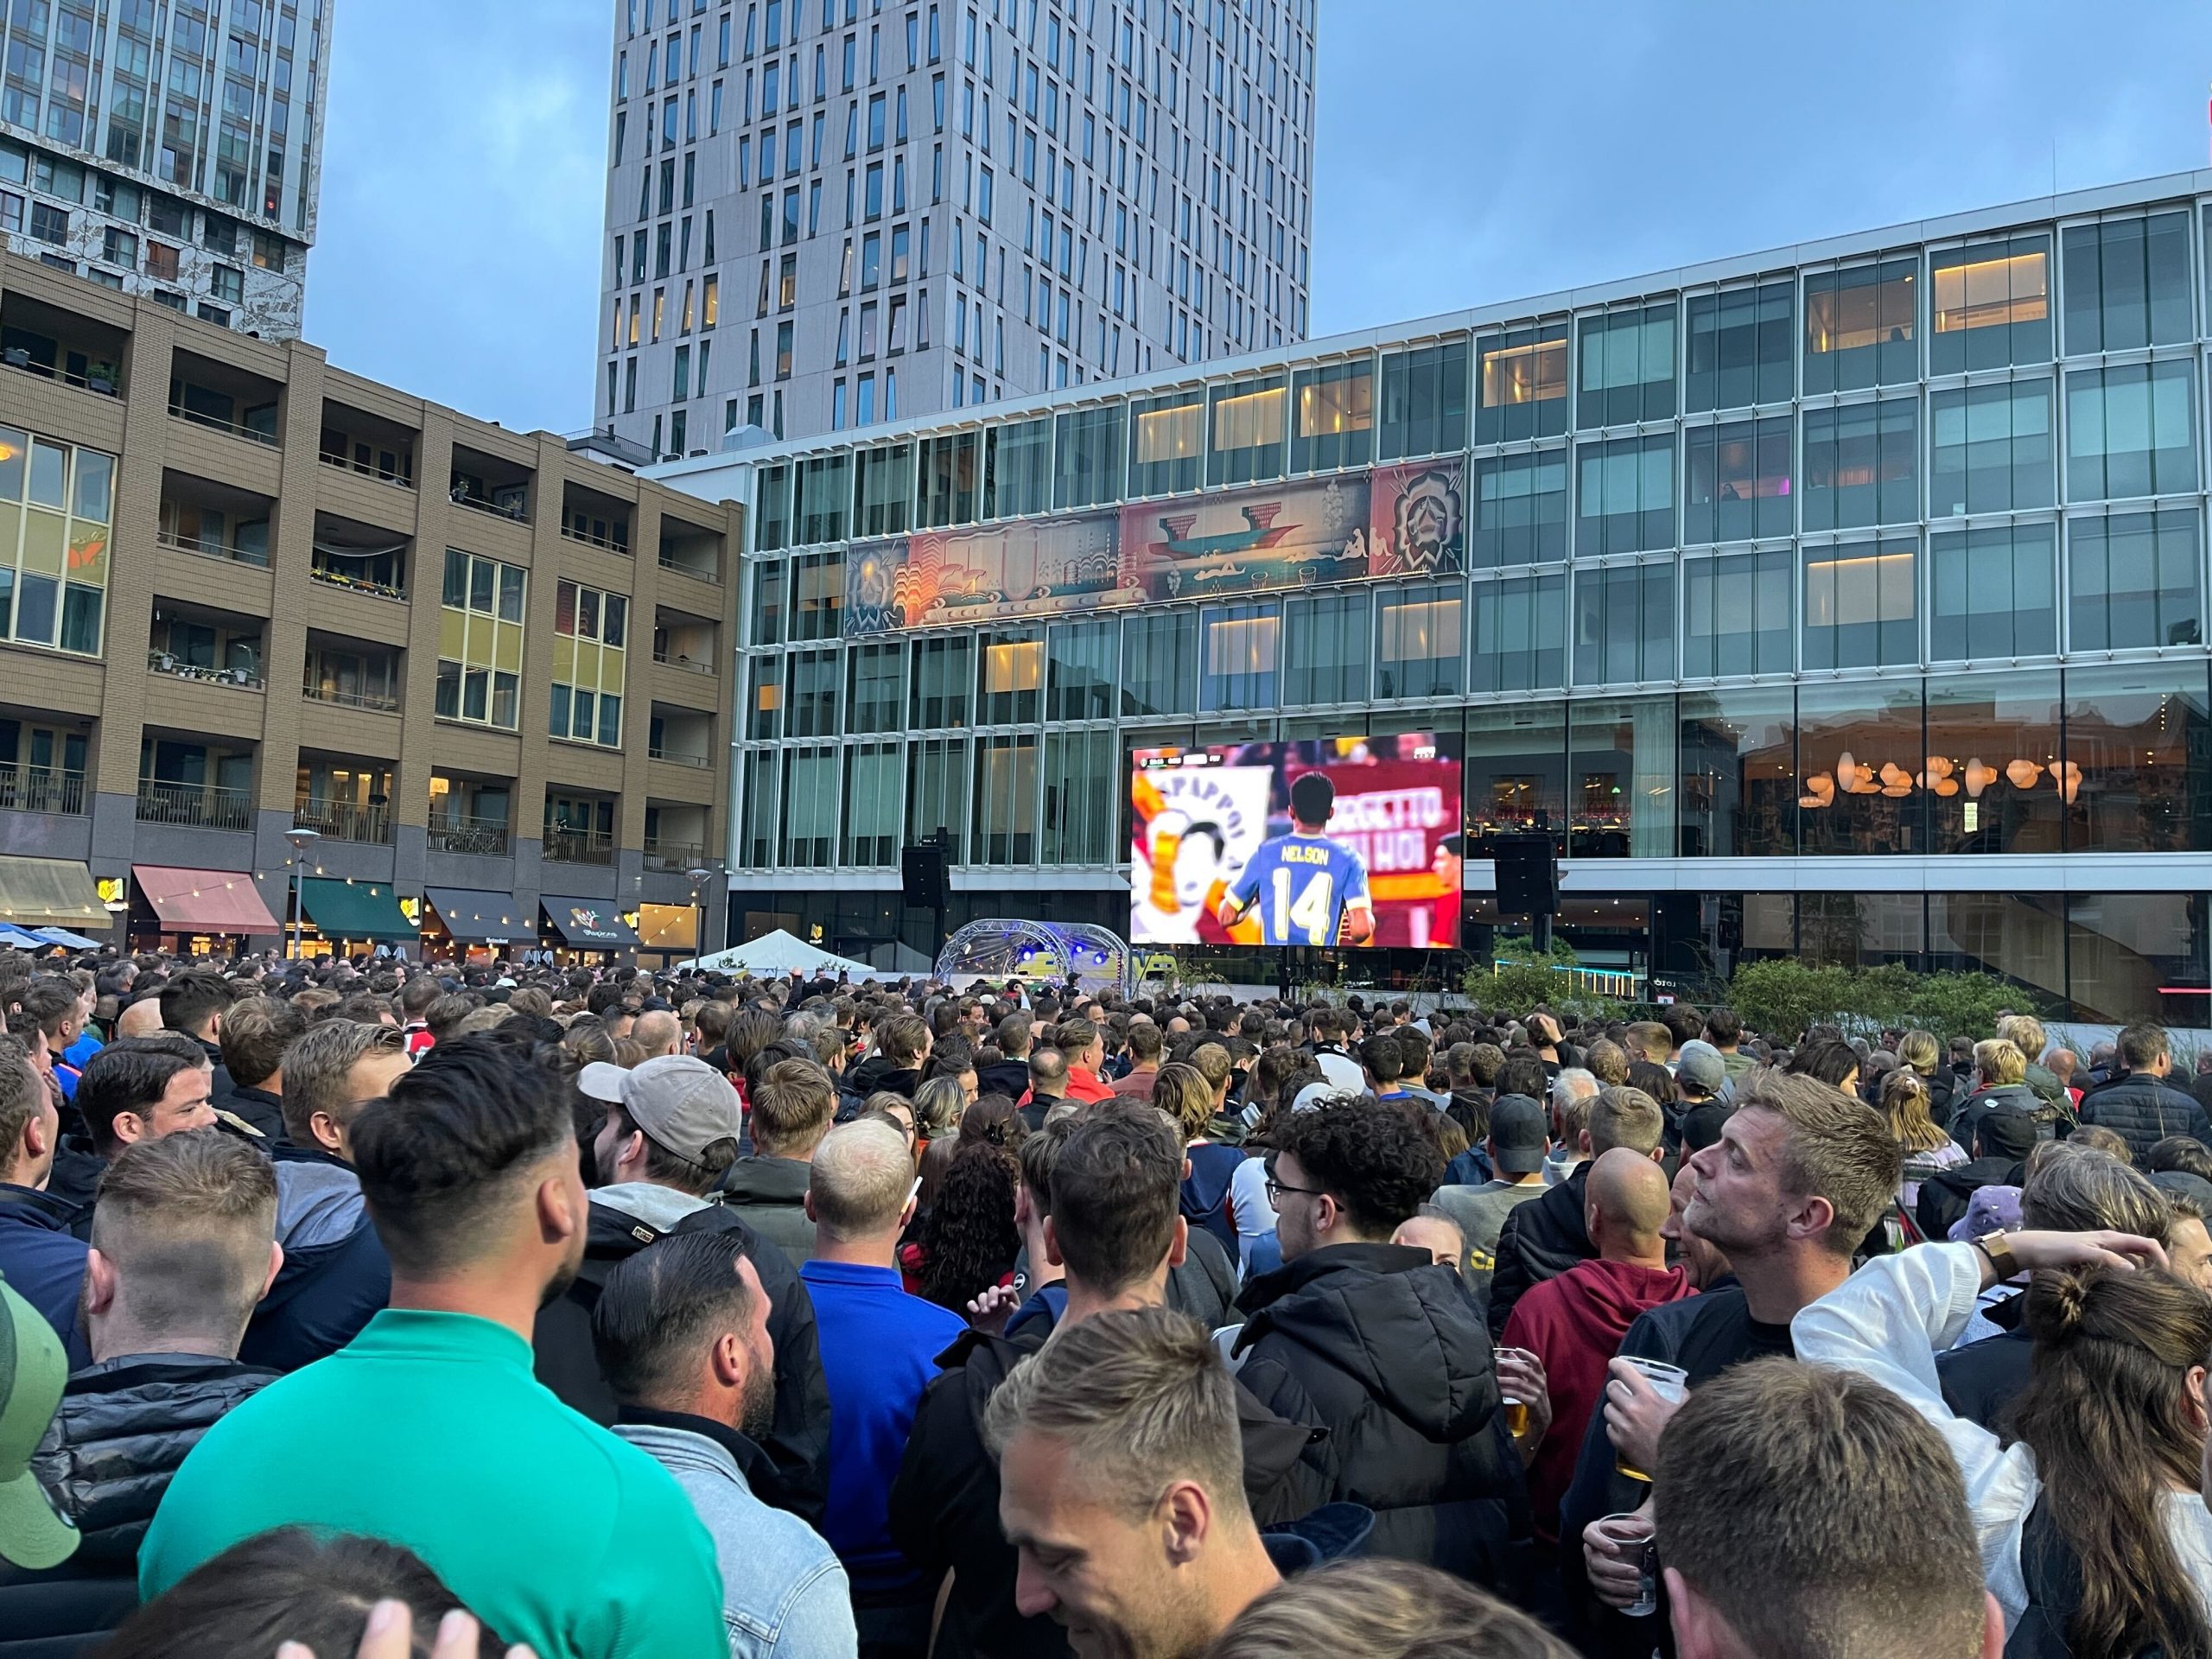 Wel of kijken naar WK in op grote 'Dat zijn heel heftige beslissingen' - OPEN Rotterdam